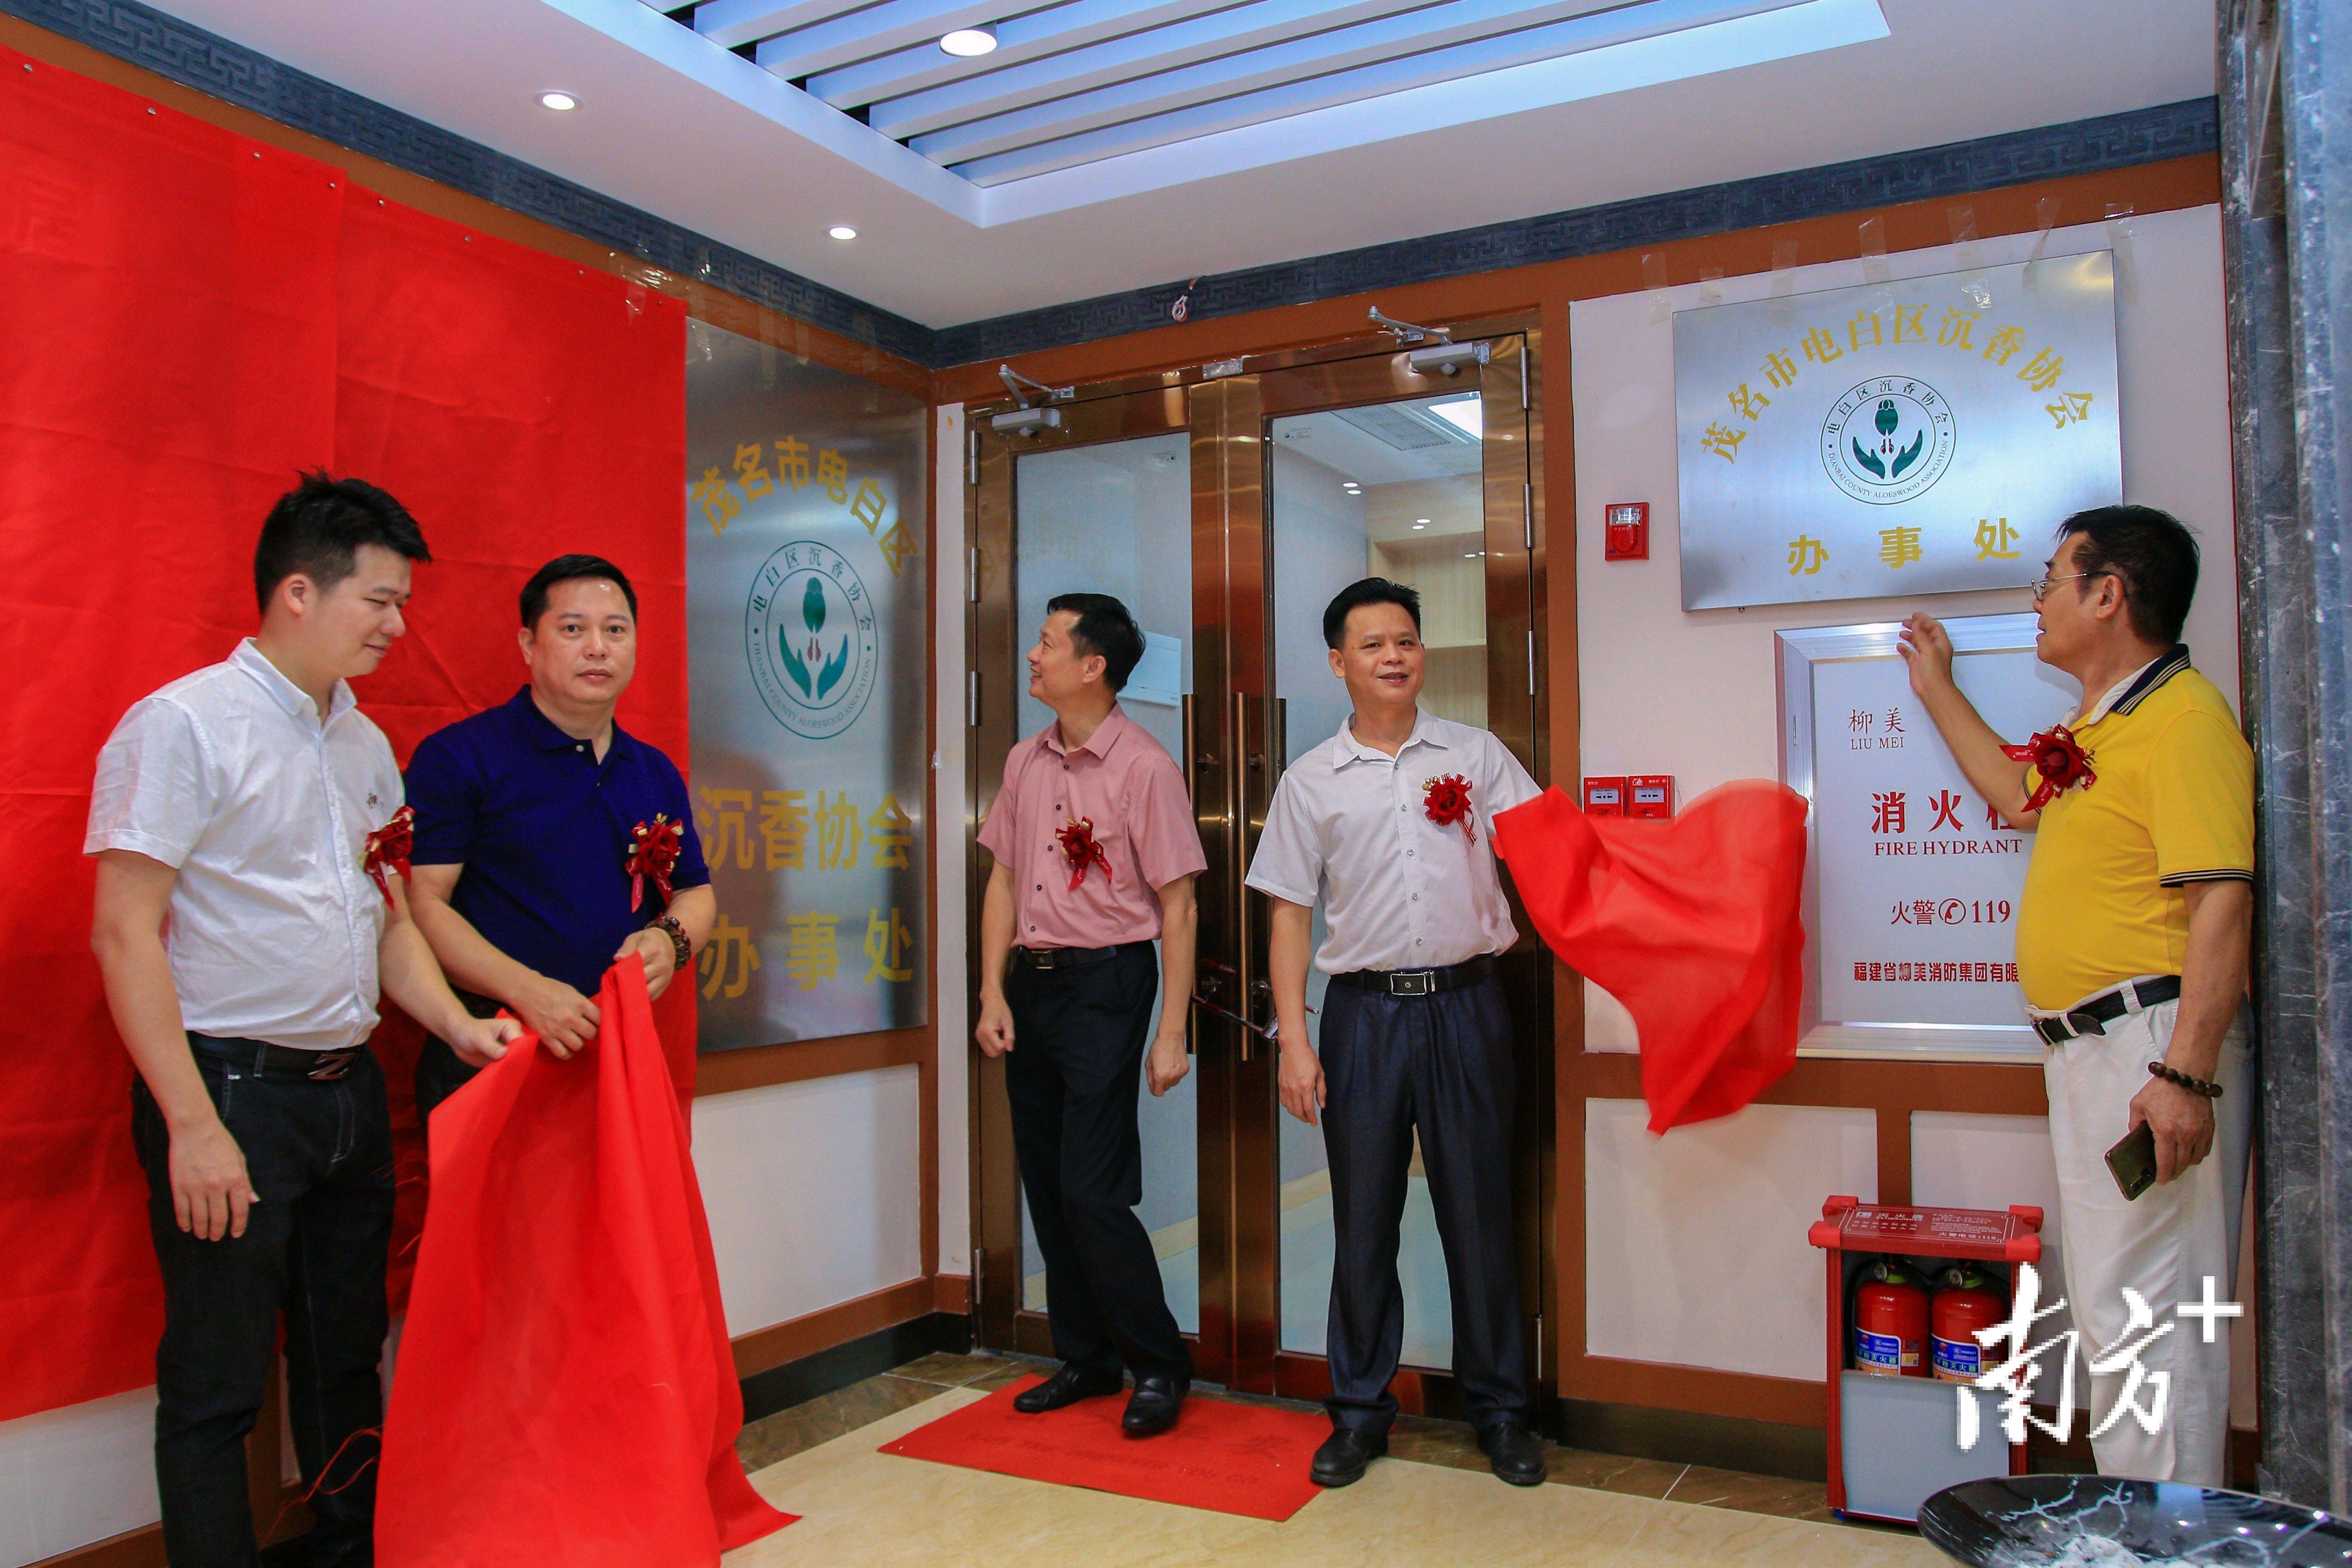 电白区沉香协会首个办事处正式揭牌,位于观珠镇商业路